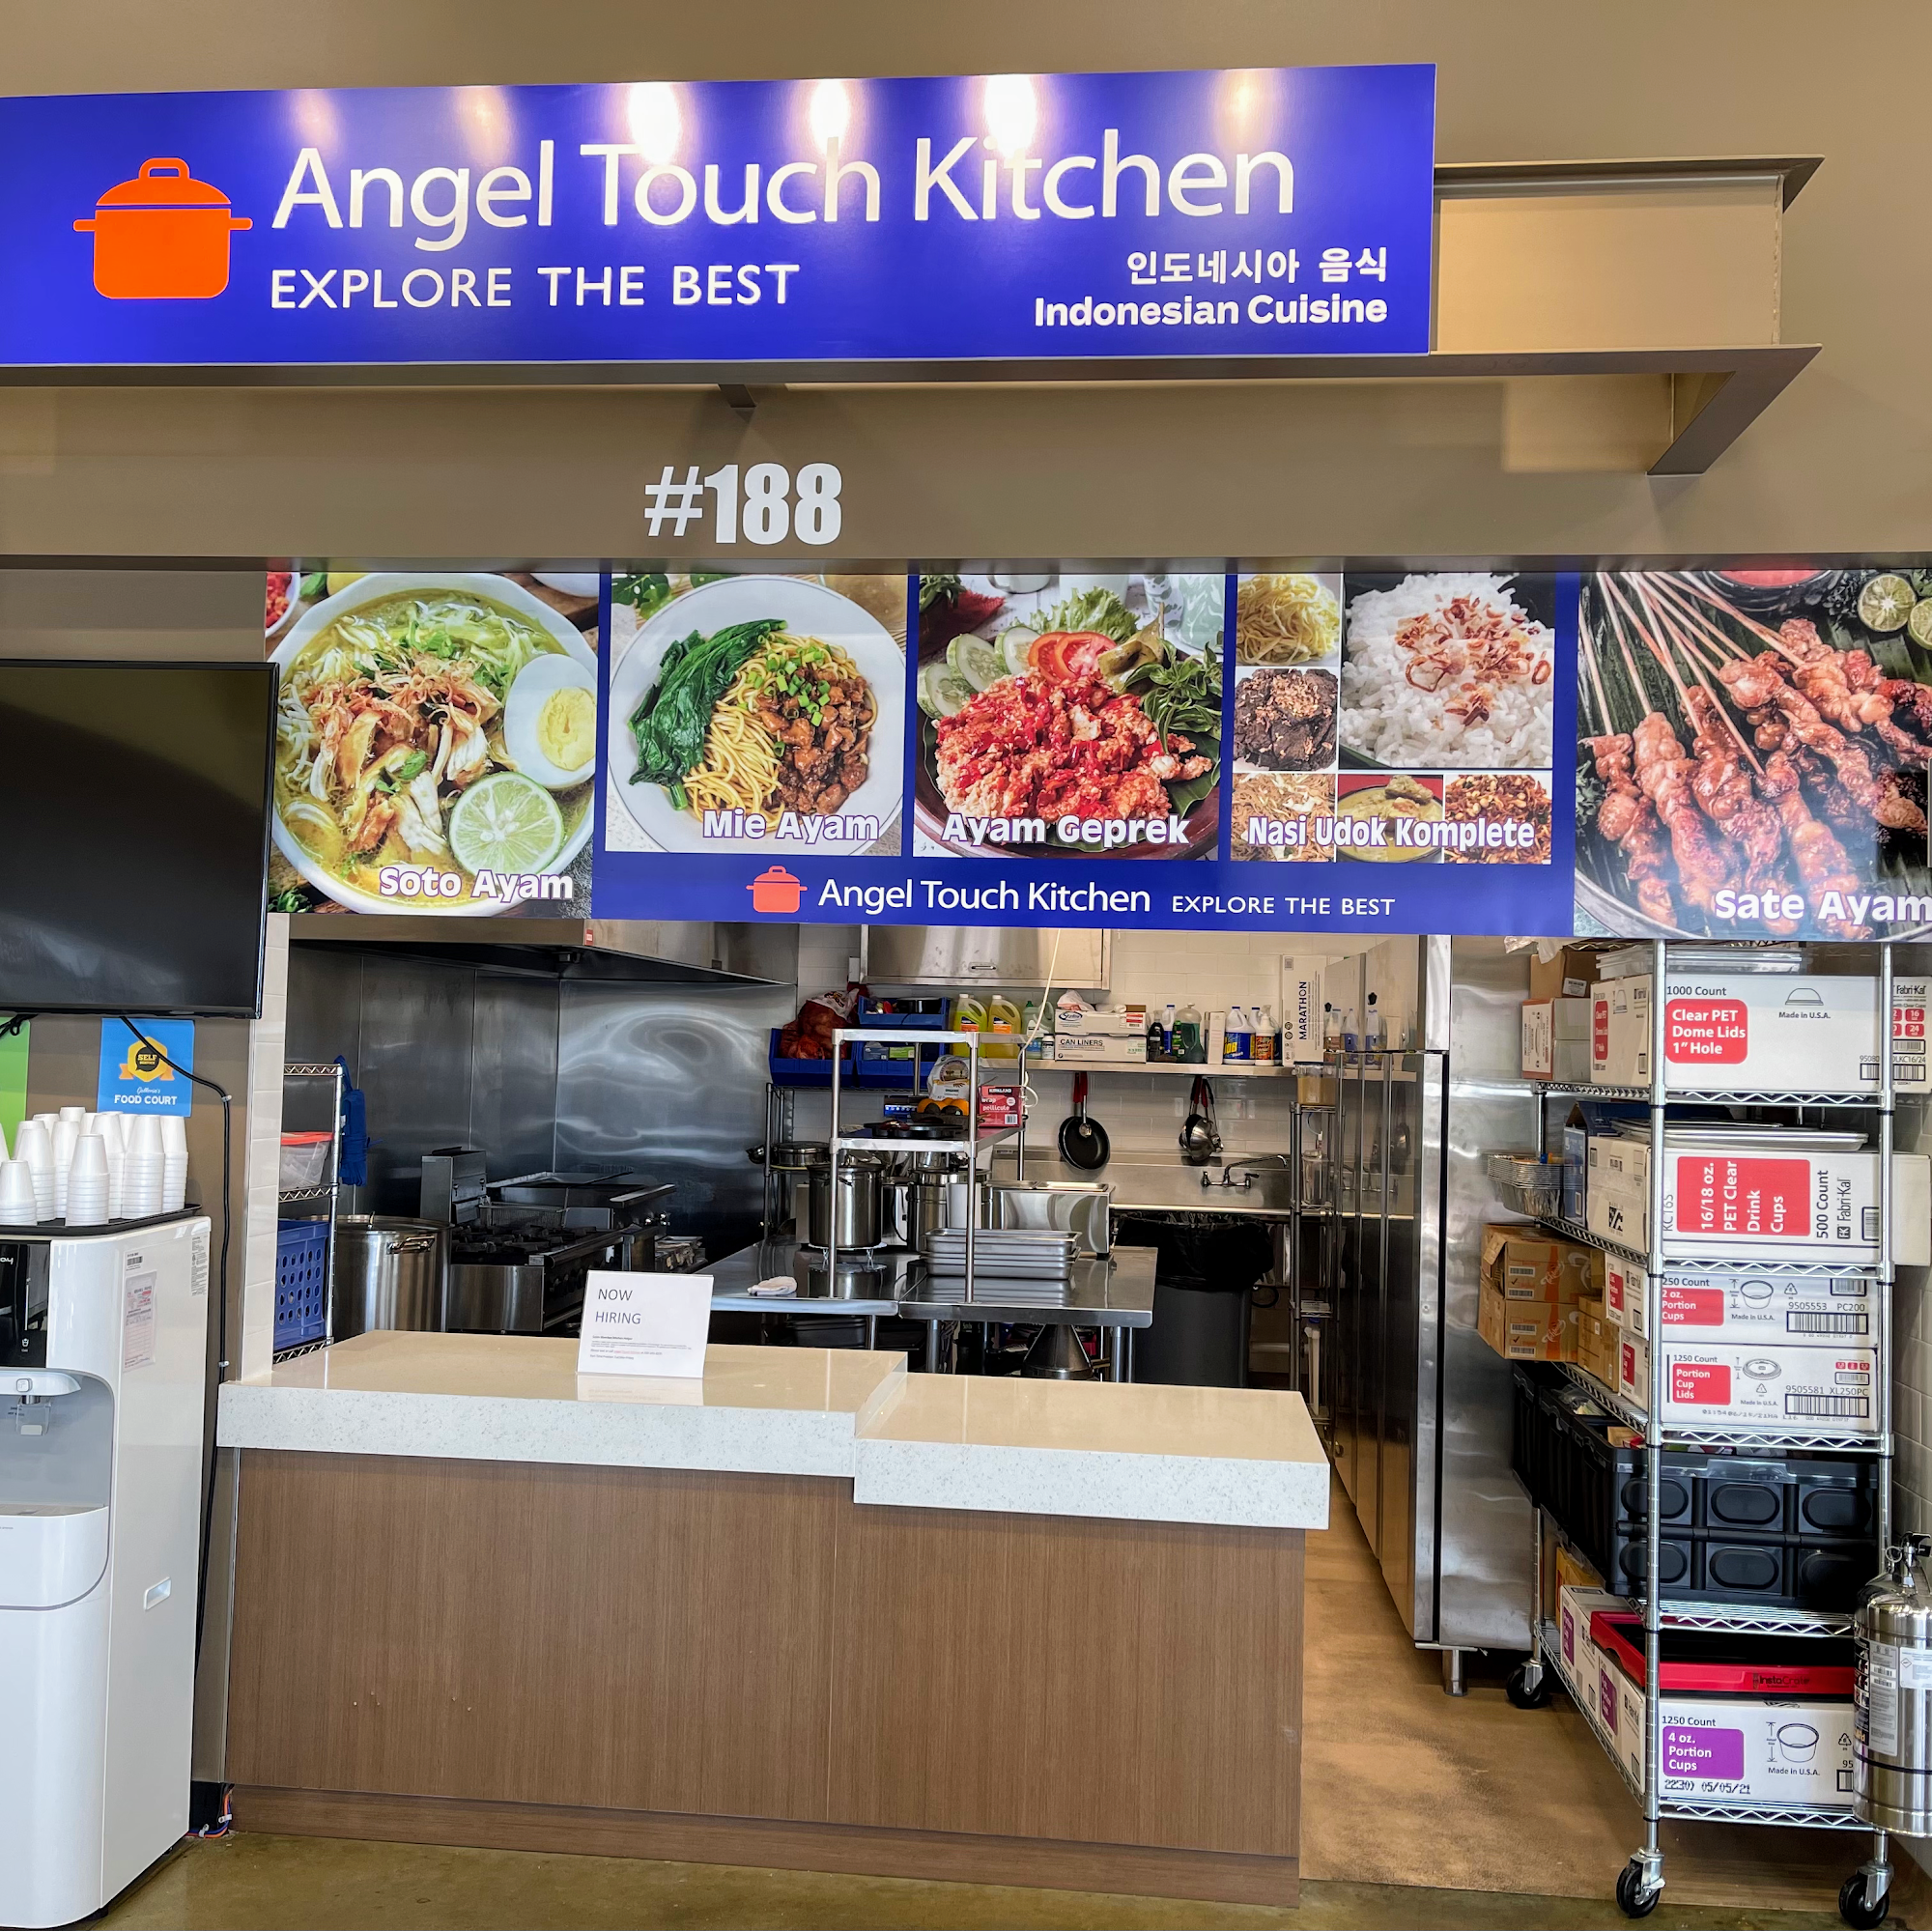 Angel Touch Kitchen